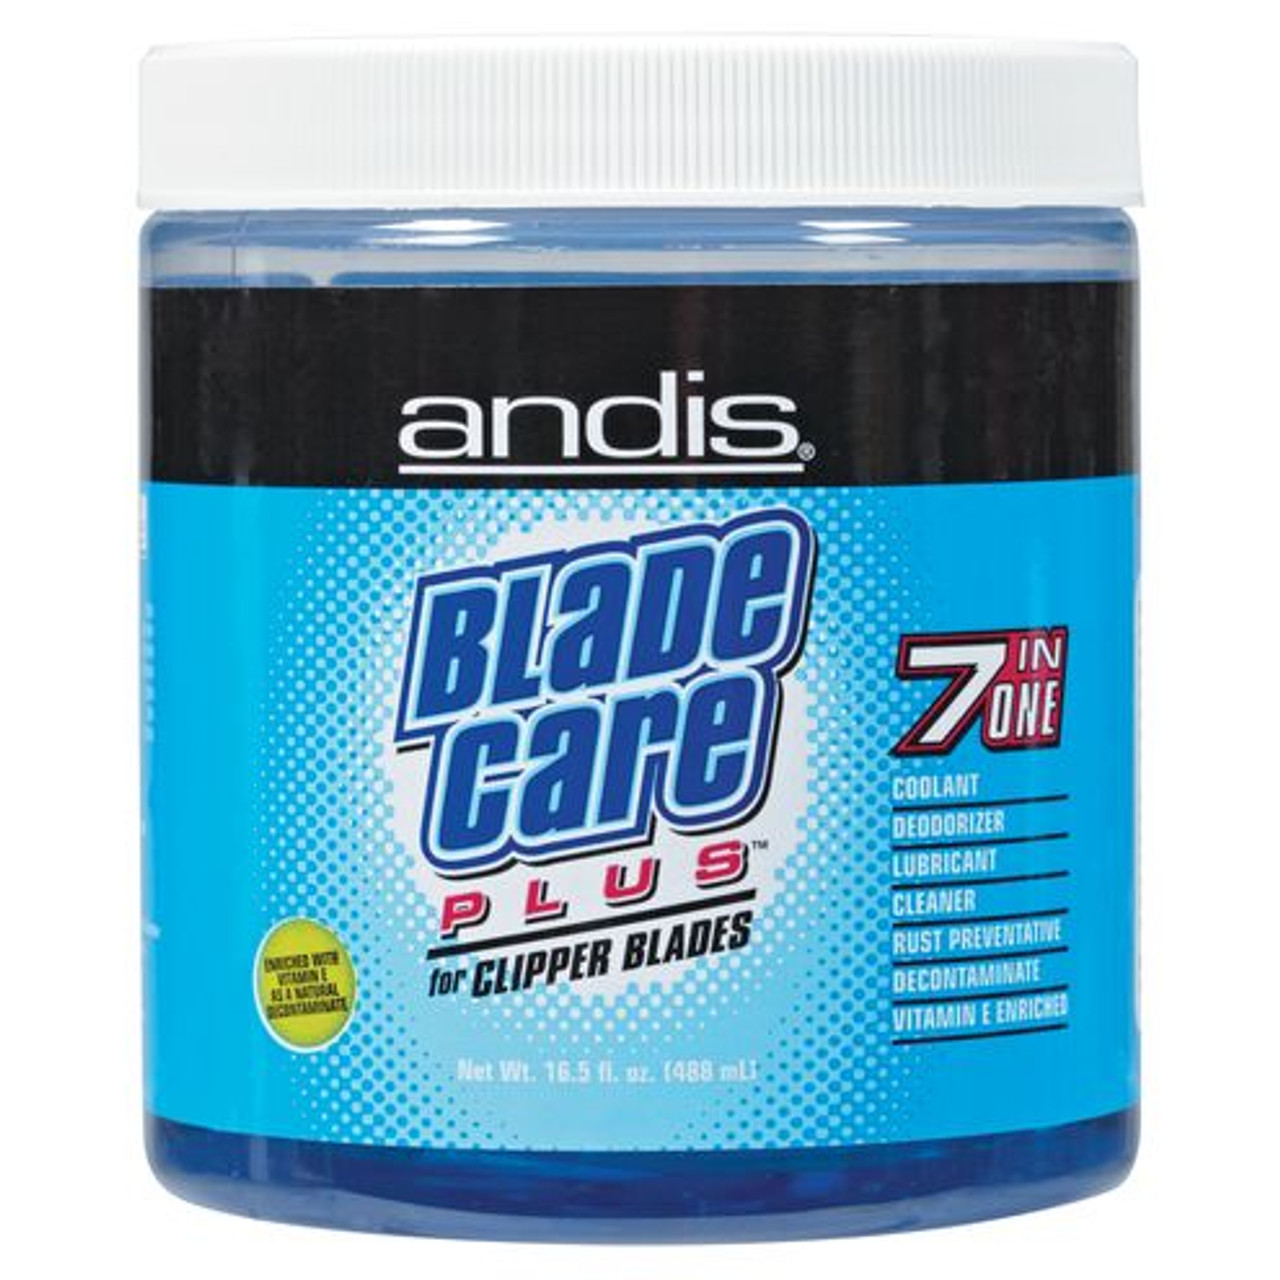 Andis Hair Clipper Blade Oil, 4 Oz 